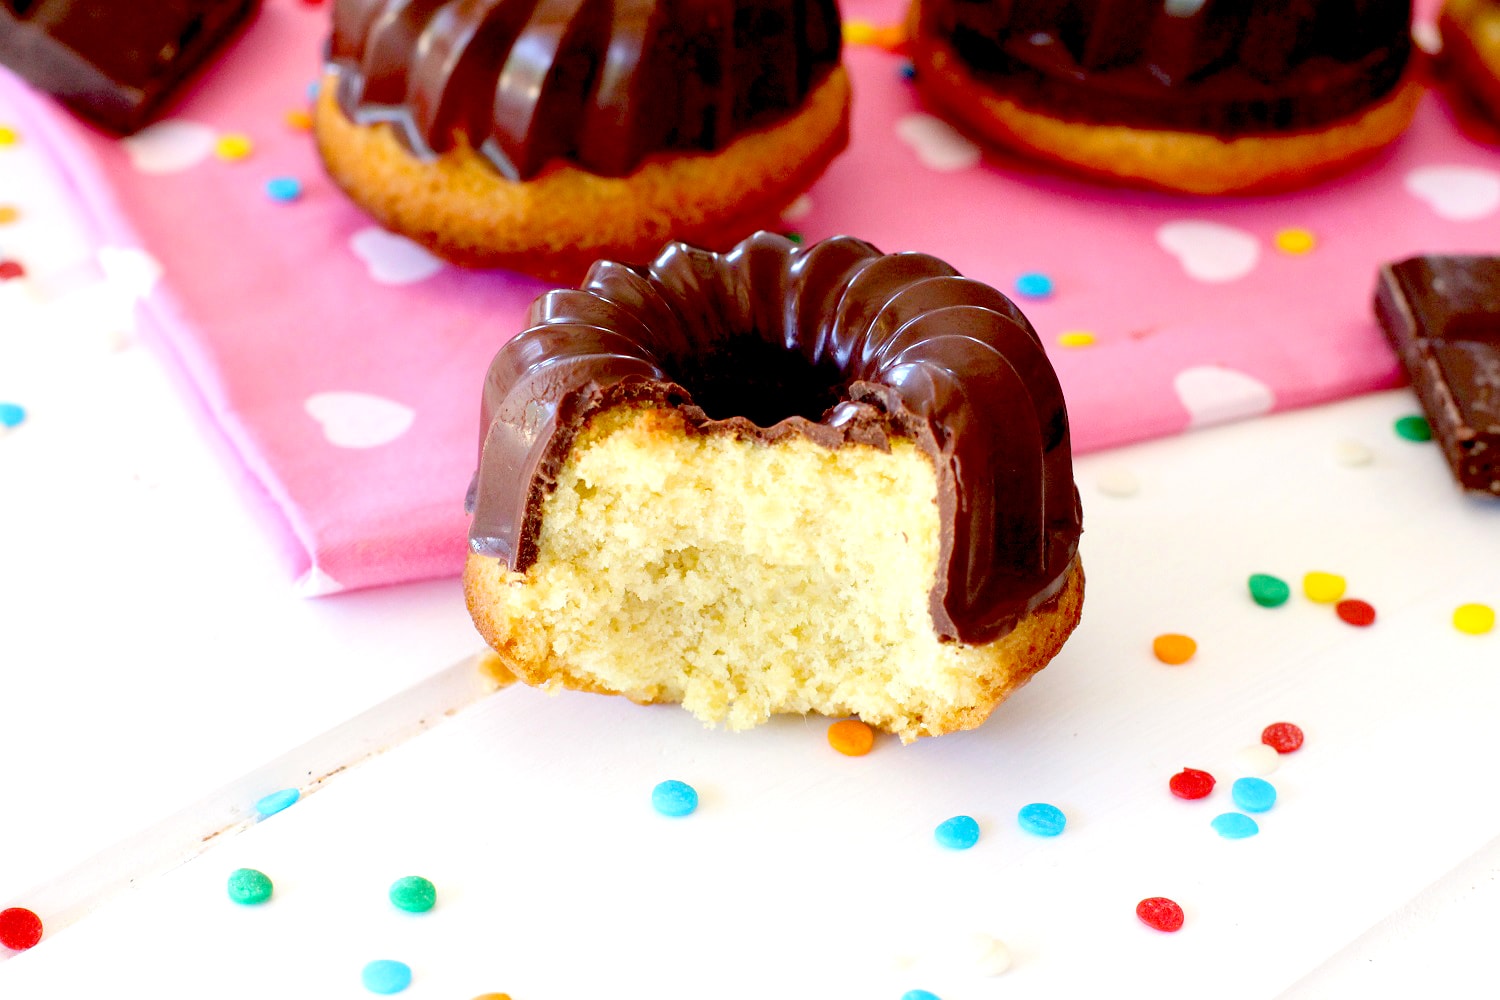 Receta de mini bundt cakes de vainilla y chocolate - Como hacer bundt cakes